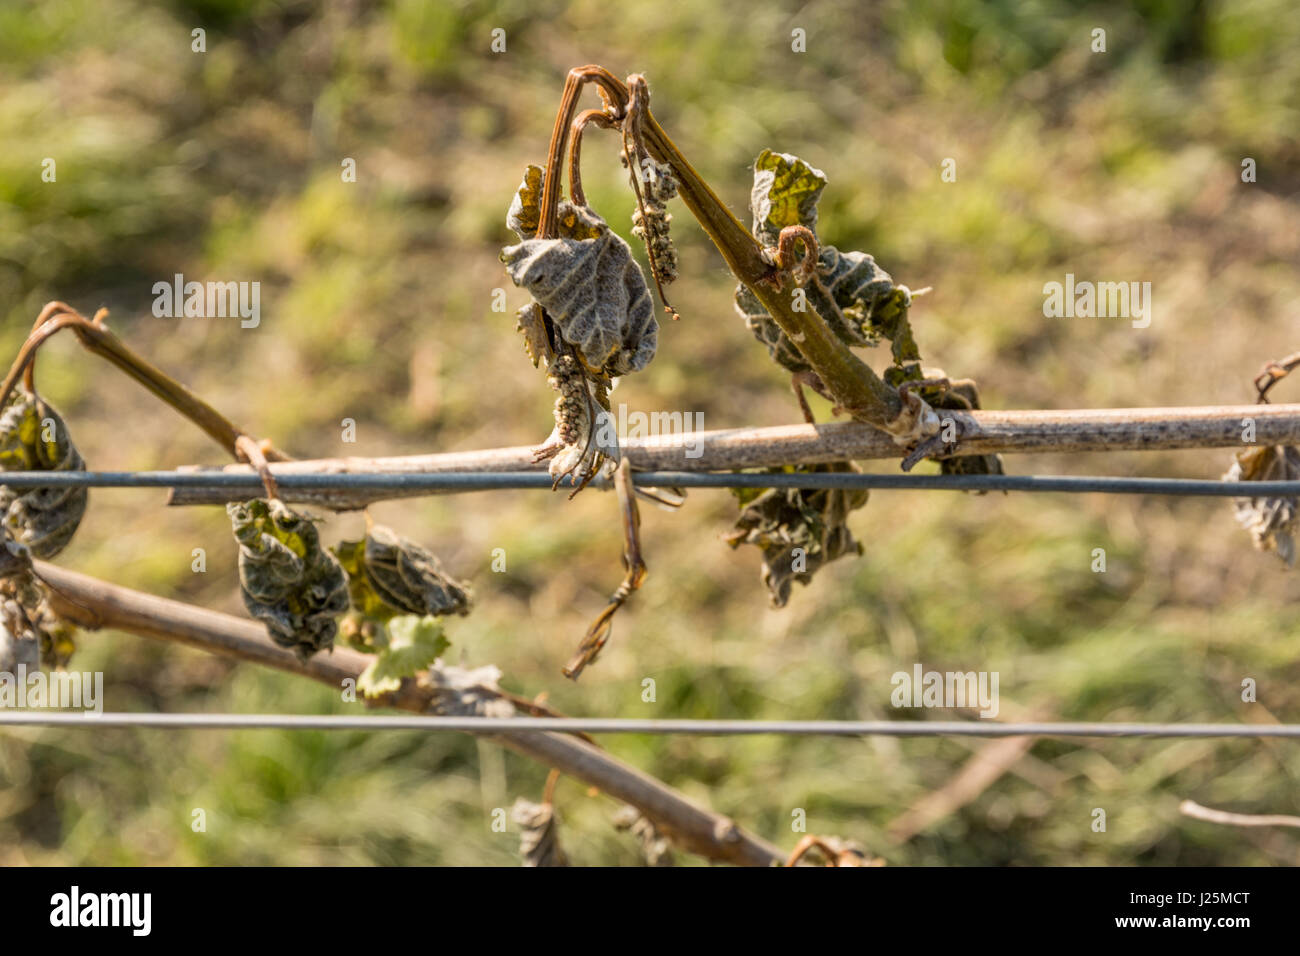 Vigna colpita dal freddo. Disastro naturale - foglie di uva secca a causa della notte di gelo primaverile Foto Stock